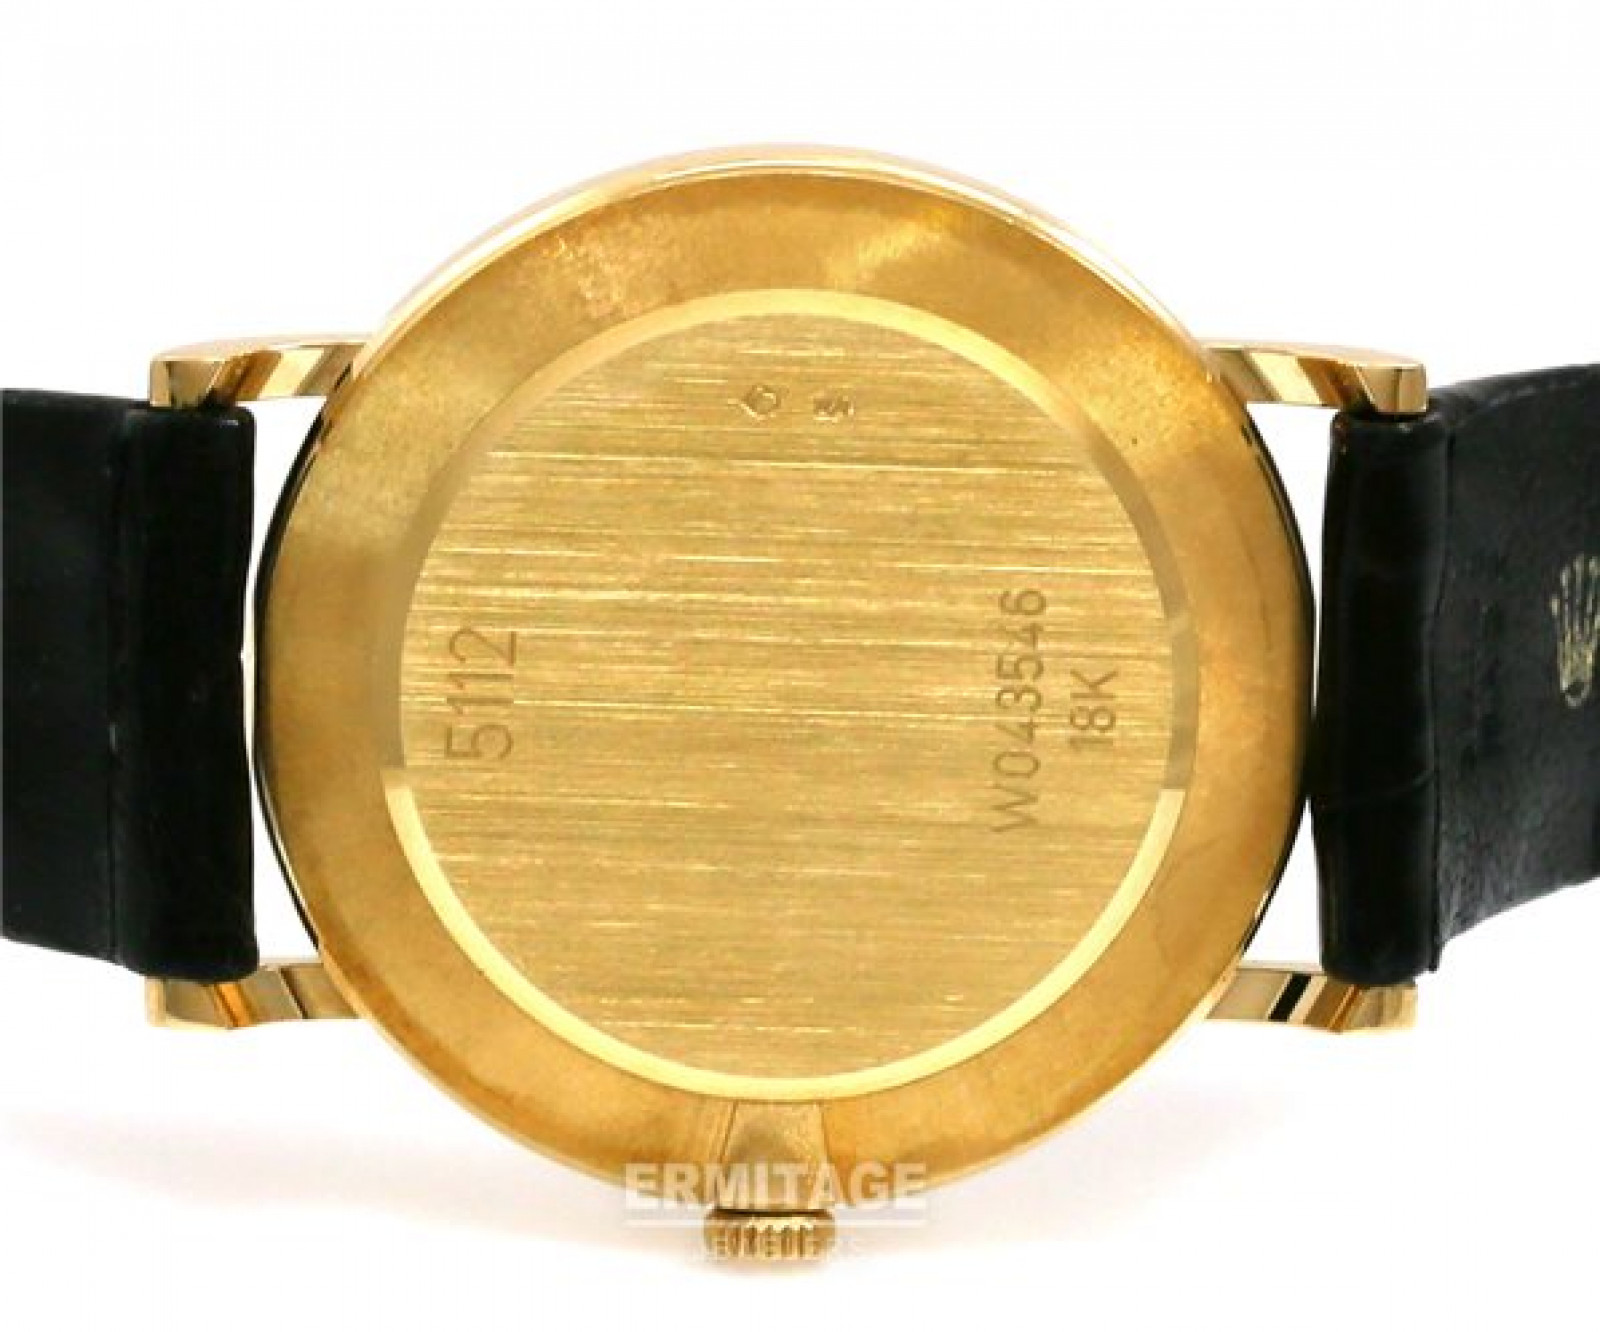 Rolex Cellini 5112 Gold